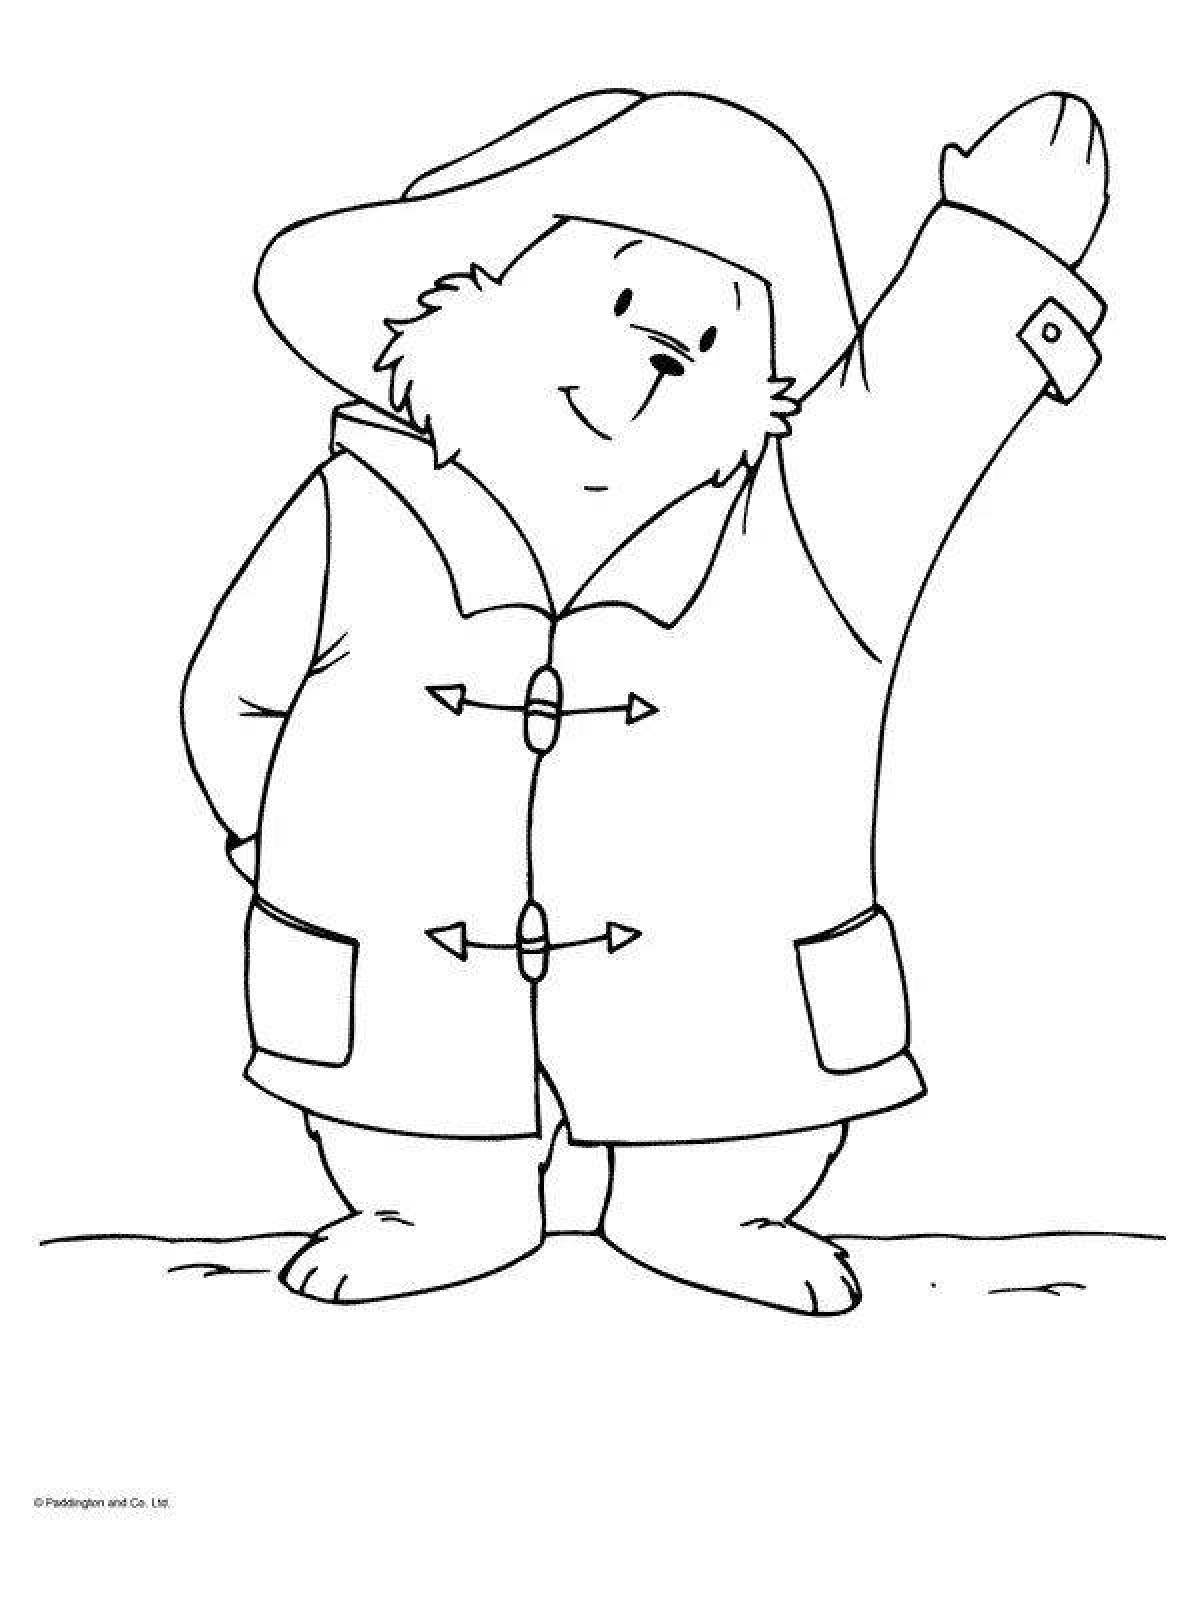 Adorable paddington bear coloring book